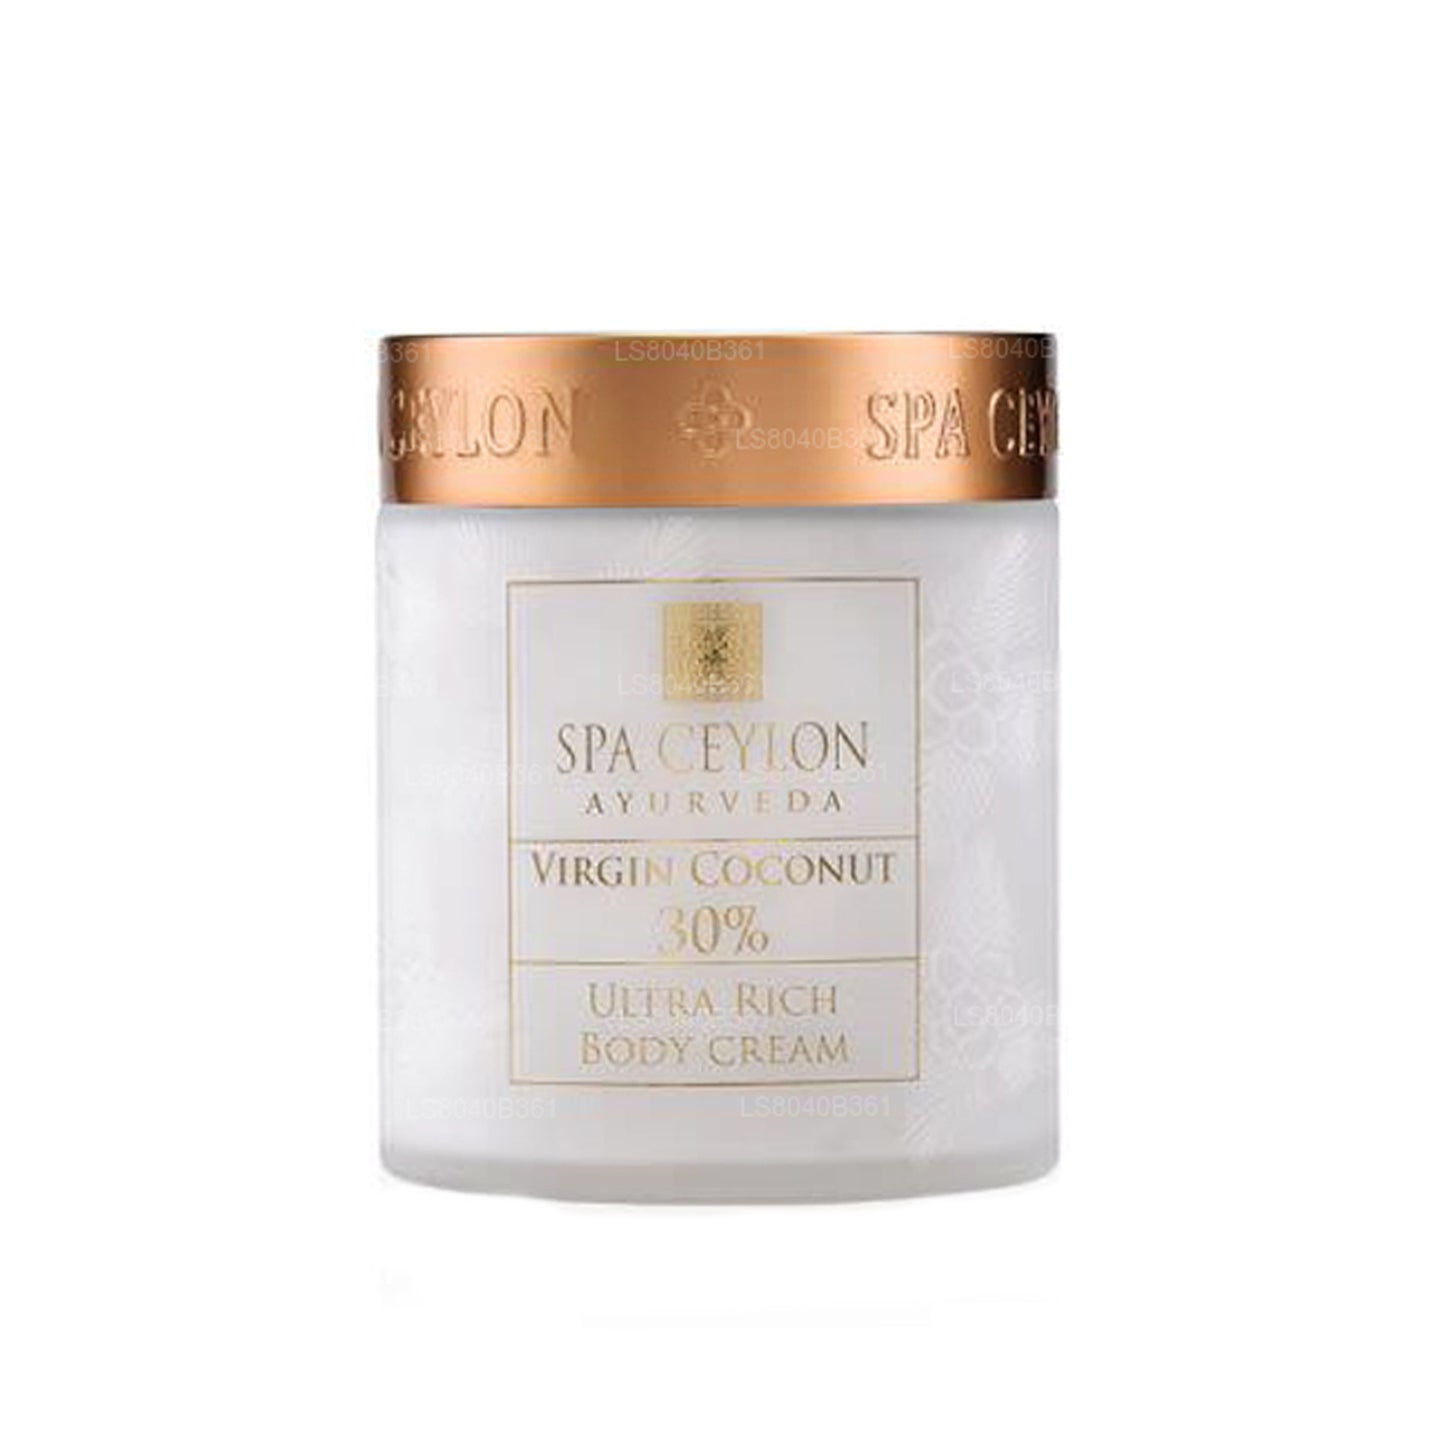 Spa Ceylon Virgin Coconut 30% - Ultra Zengin Vücut Kremi (200g)